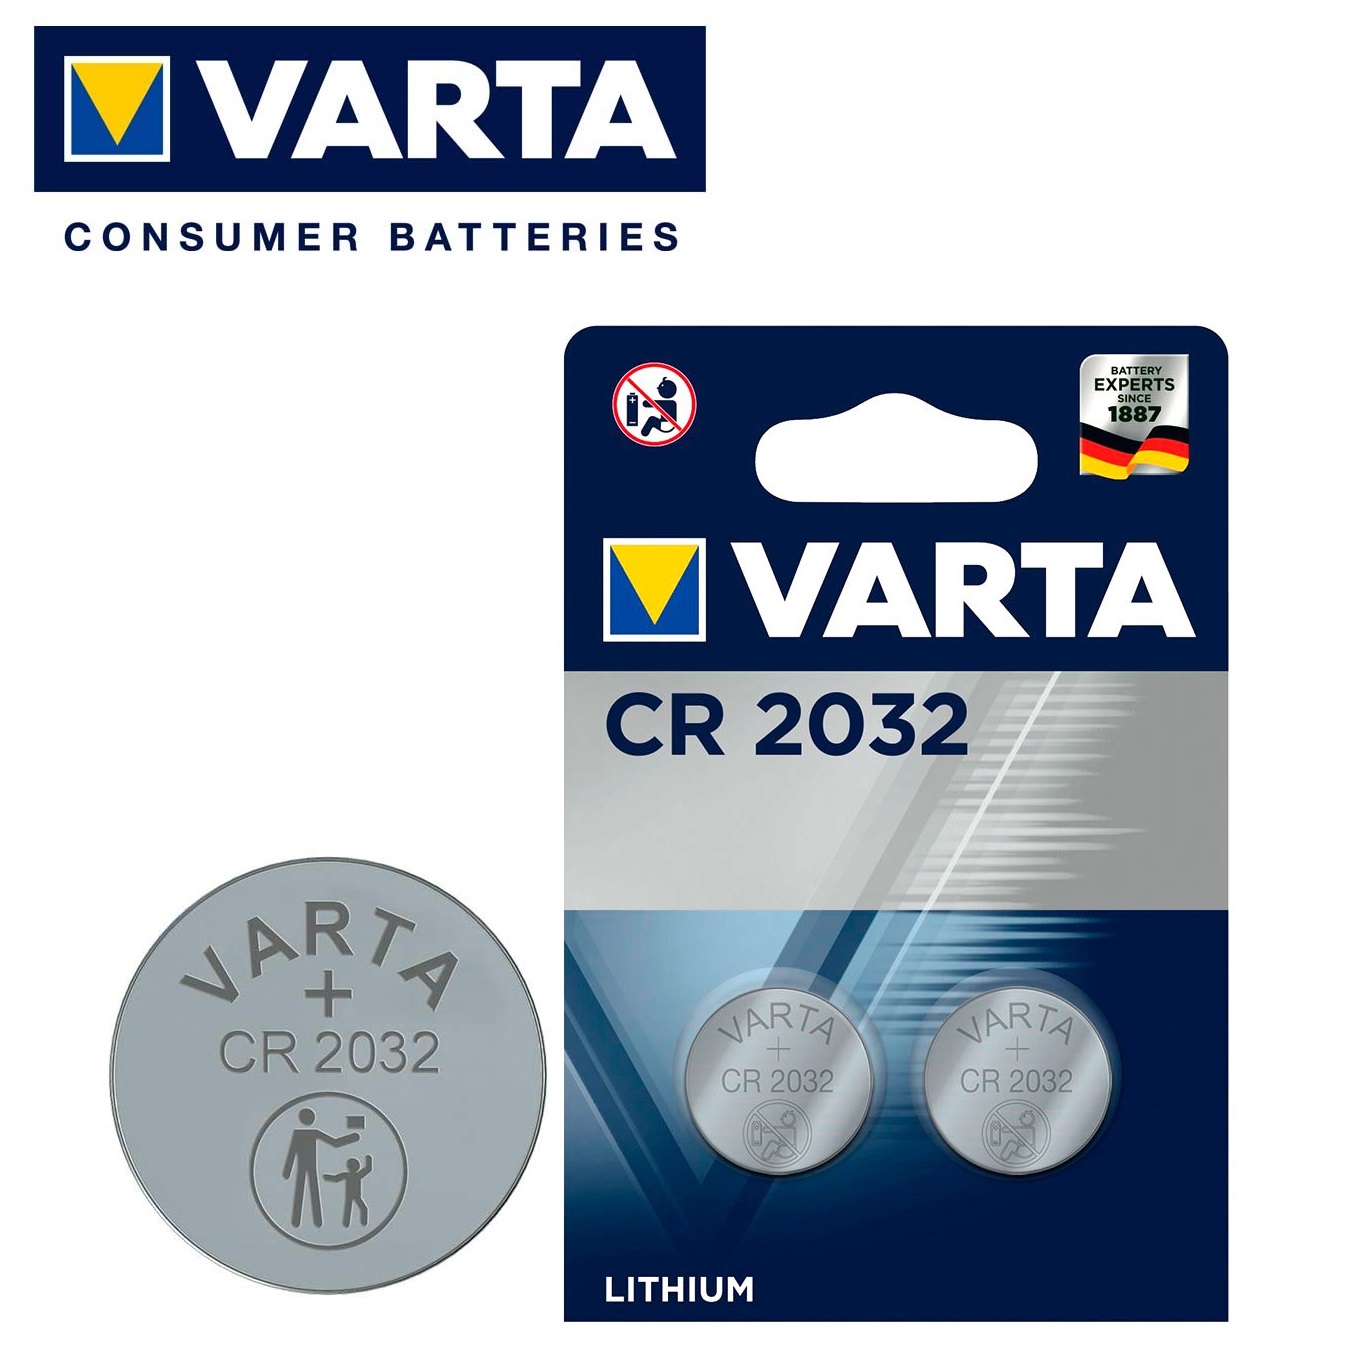 Varta CR2032 Button Battery, 3V, 20mm Diameter